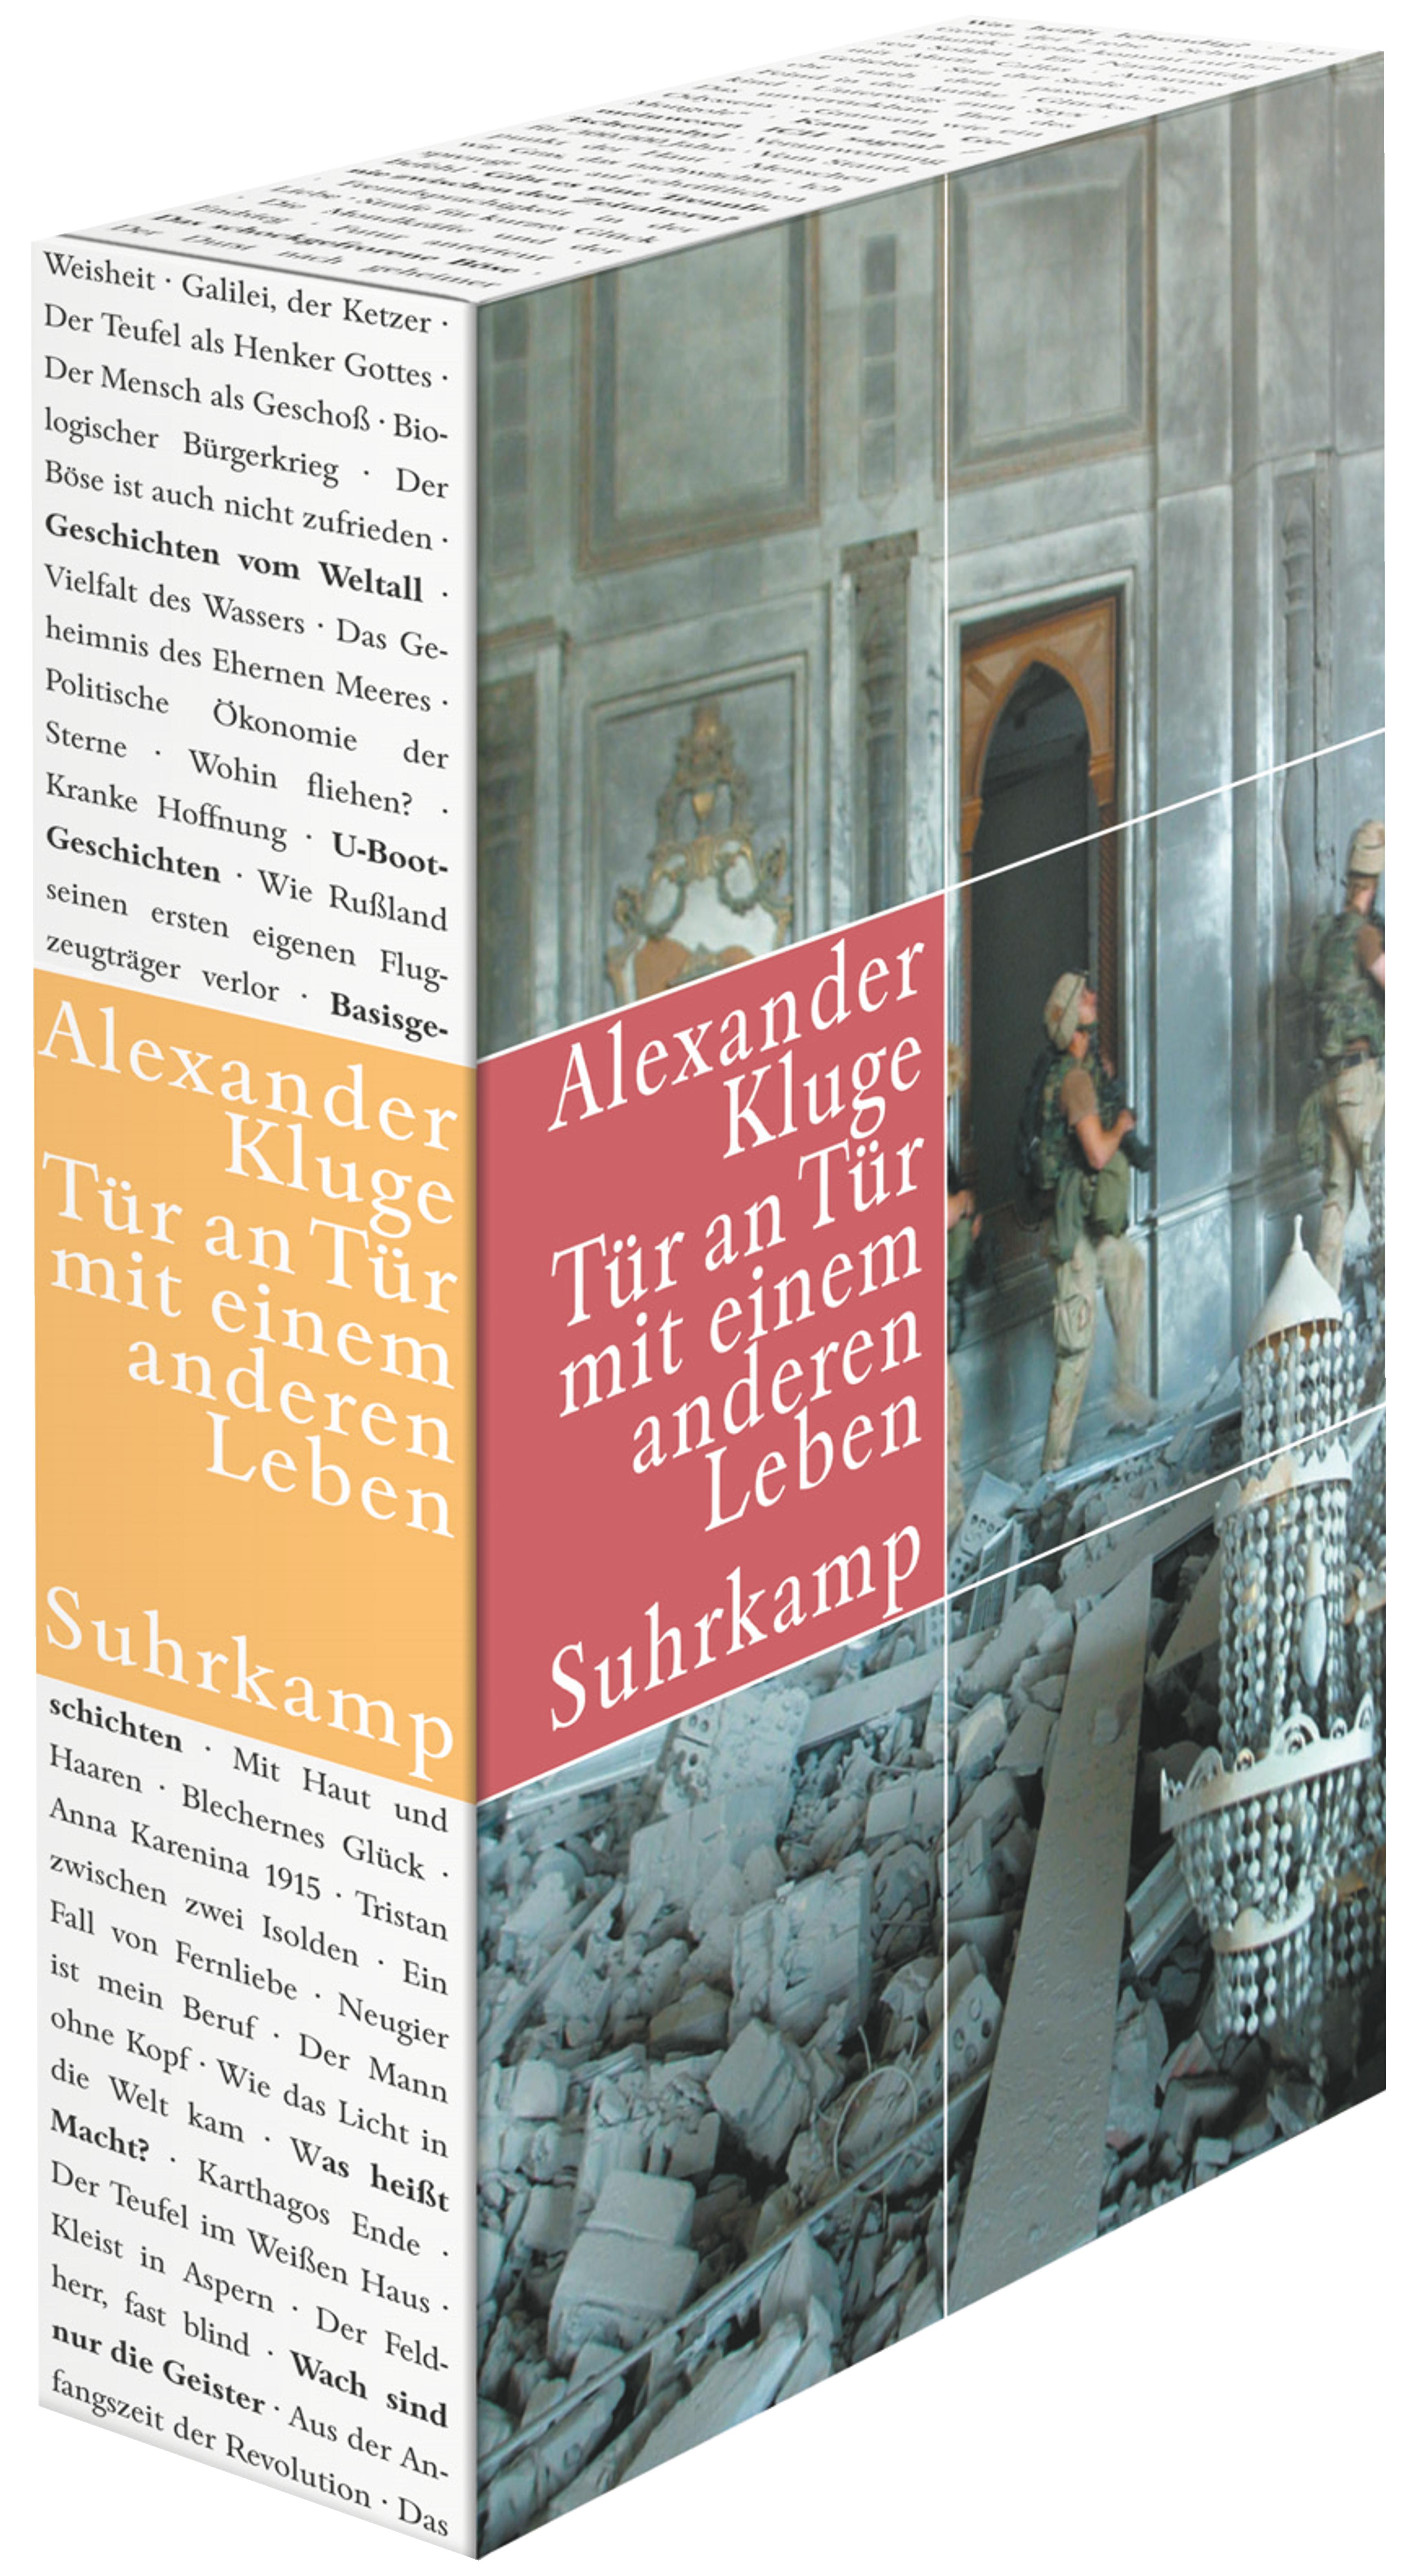 Buch　Alexander　Leben.　(Suhrkamp　Tür　anderen　einem　mit　Kluge　Tür　Verlag)　an　von